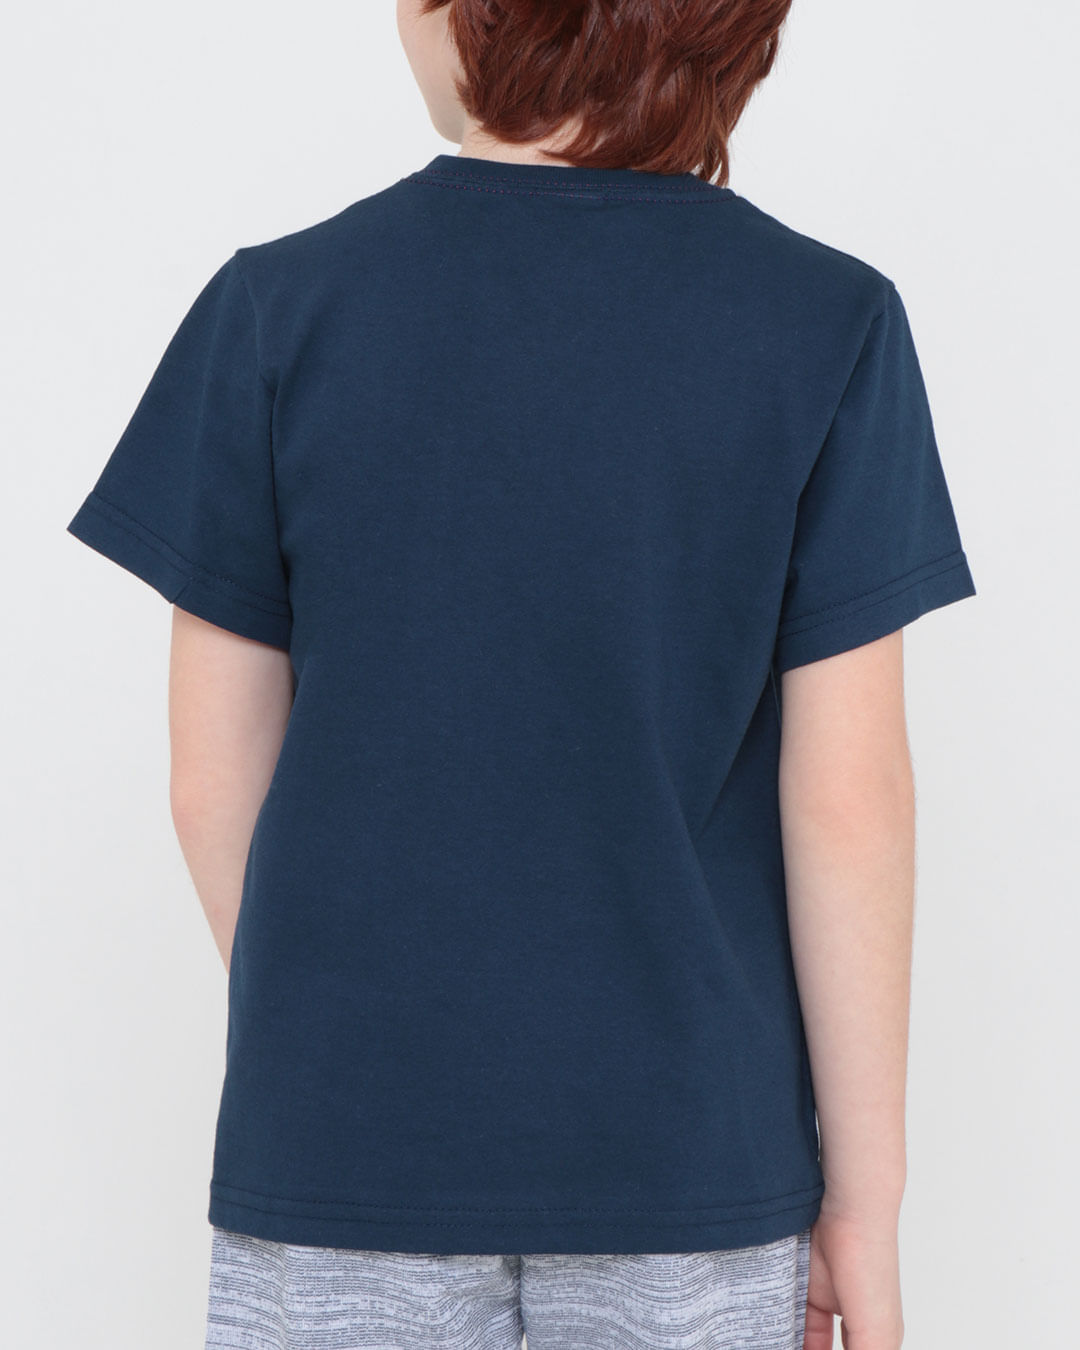 Camiseta-Infantil-Estampa-Original-Azul-Marinho